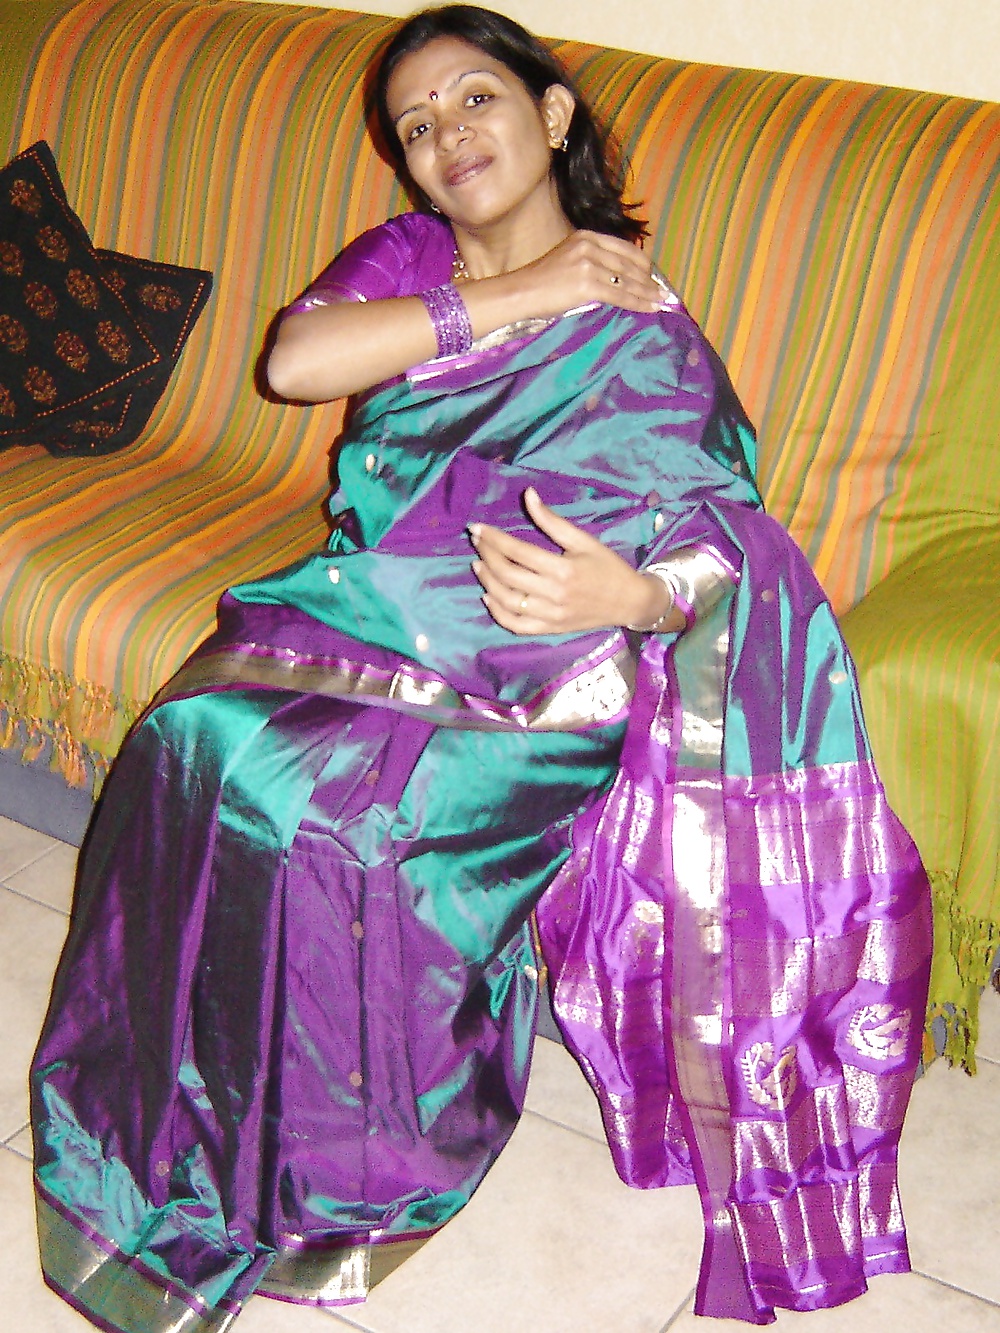 Free Desi Indian Milf Loves Teasing Me With a Silk Saree photos